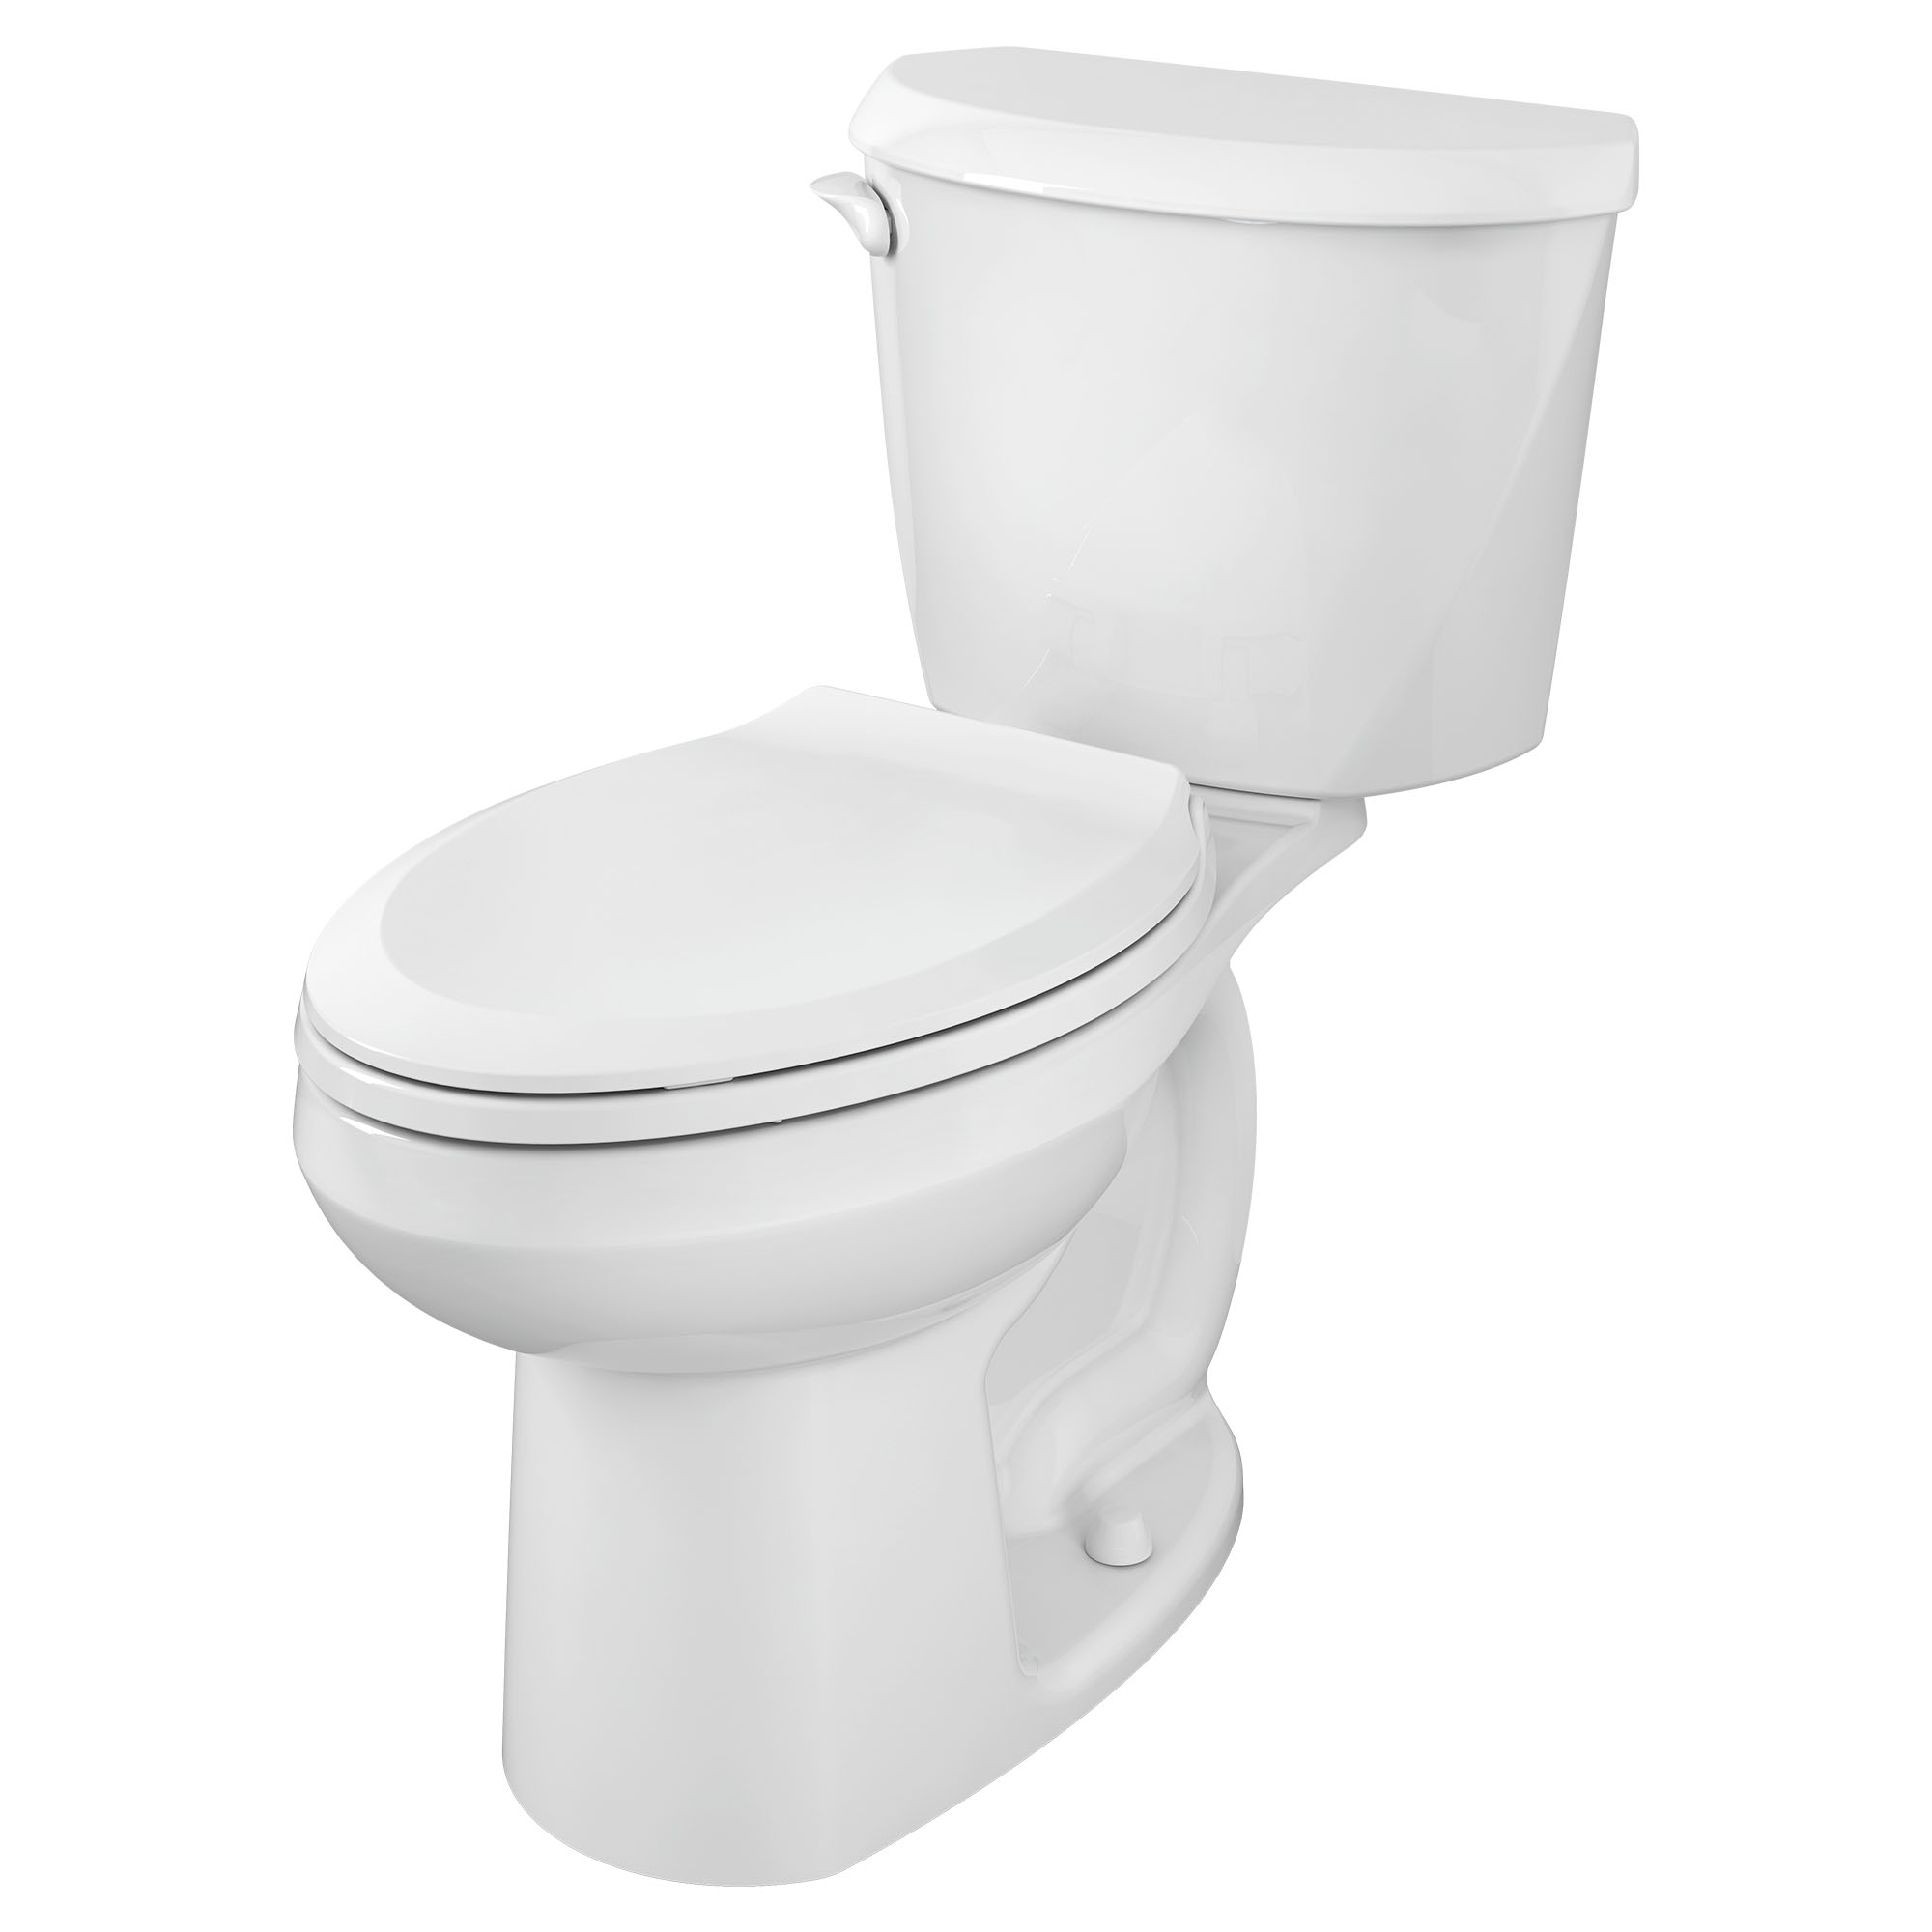 Toilette Colony, 2 pièces, 1,6 gpc/6,0 lpc, à cuvette allongée à hauteur de chaise, sans siège